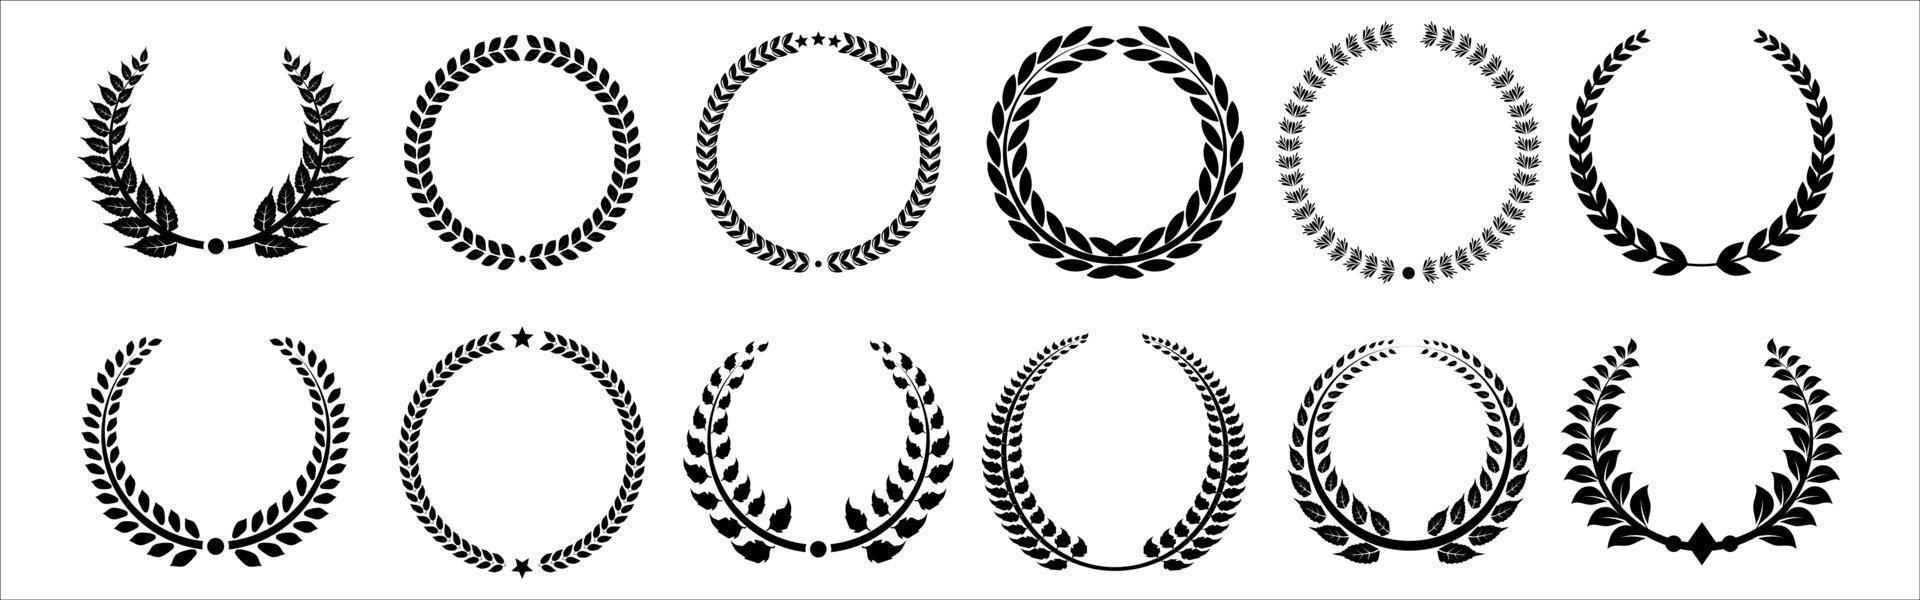 uppsättning av svart och vit siluett cirkulär lagerblad och ek kransar som visar en utmärkelse, prestation, heraldik, adel. vektor